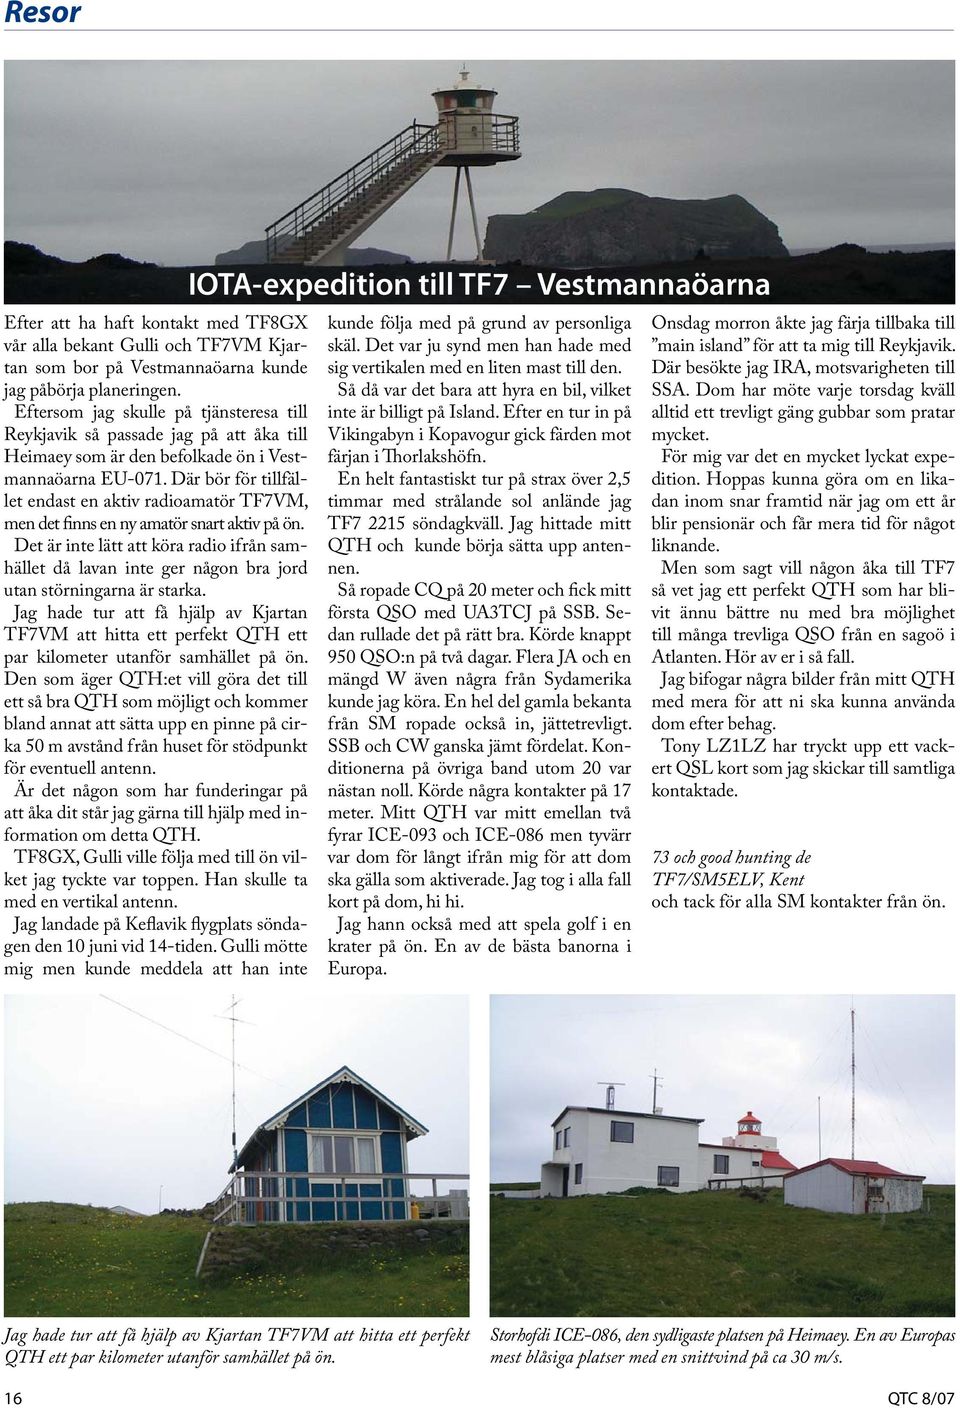 Där bör för tillfället endast en aktiv radioamatör TF7VM, men det finns en ny amatör snart aktiv på ön.